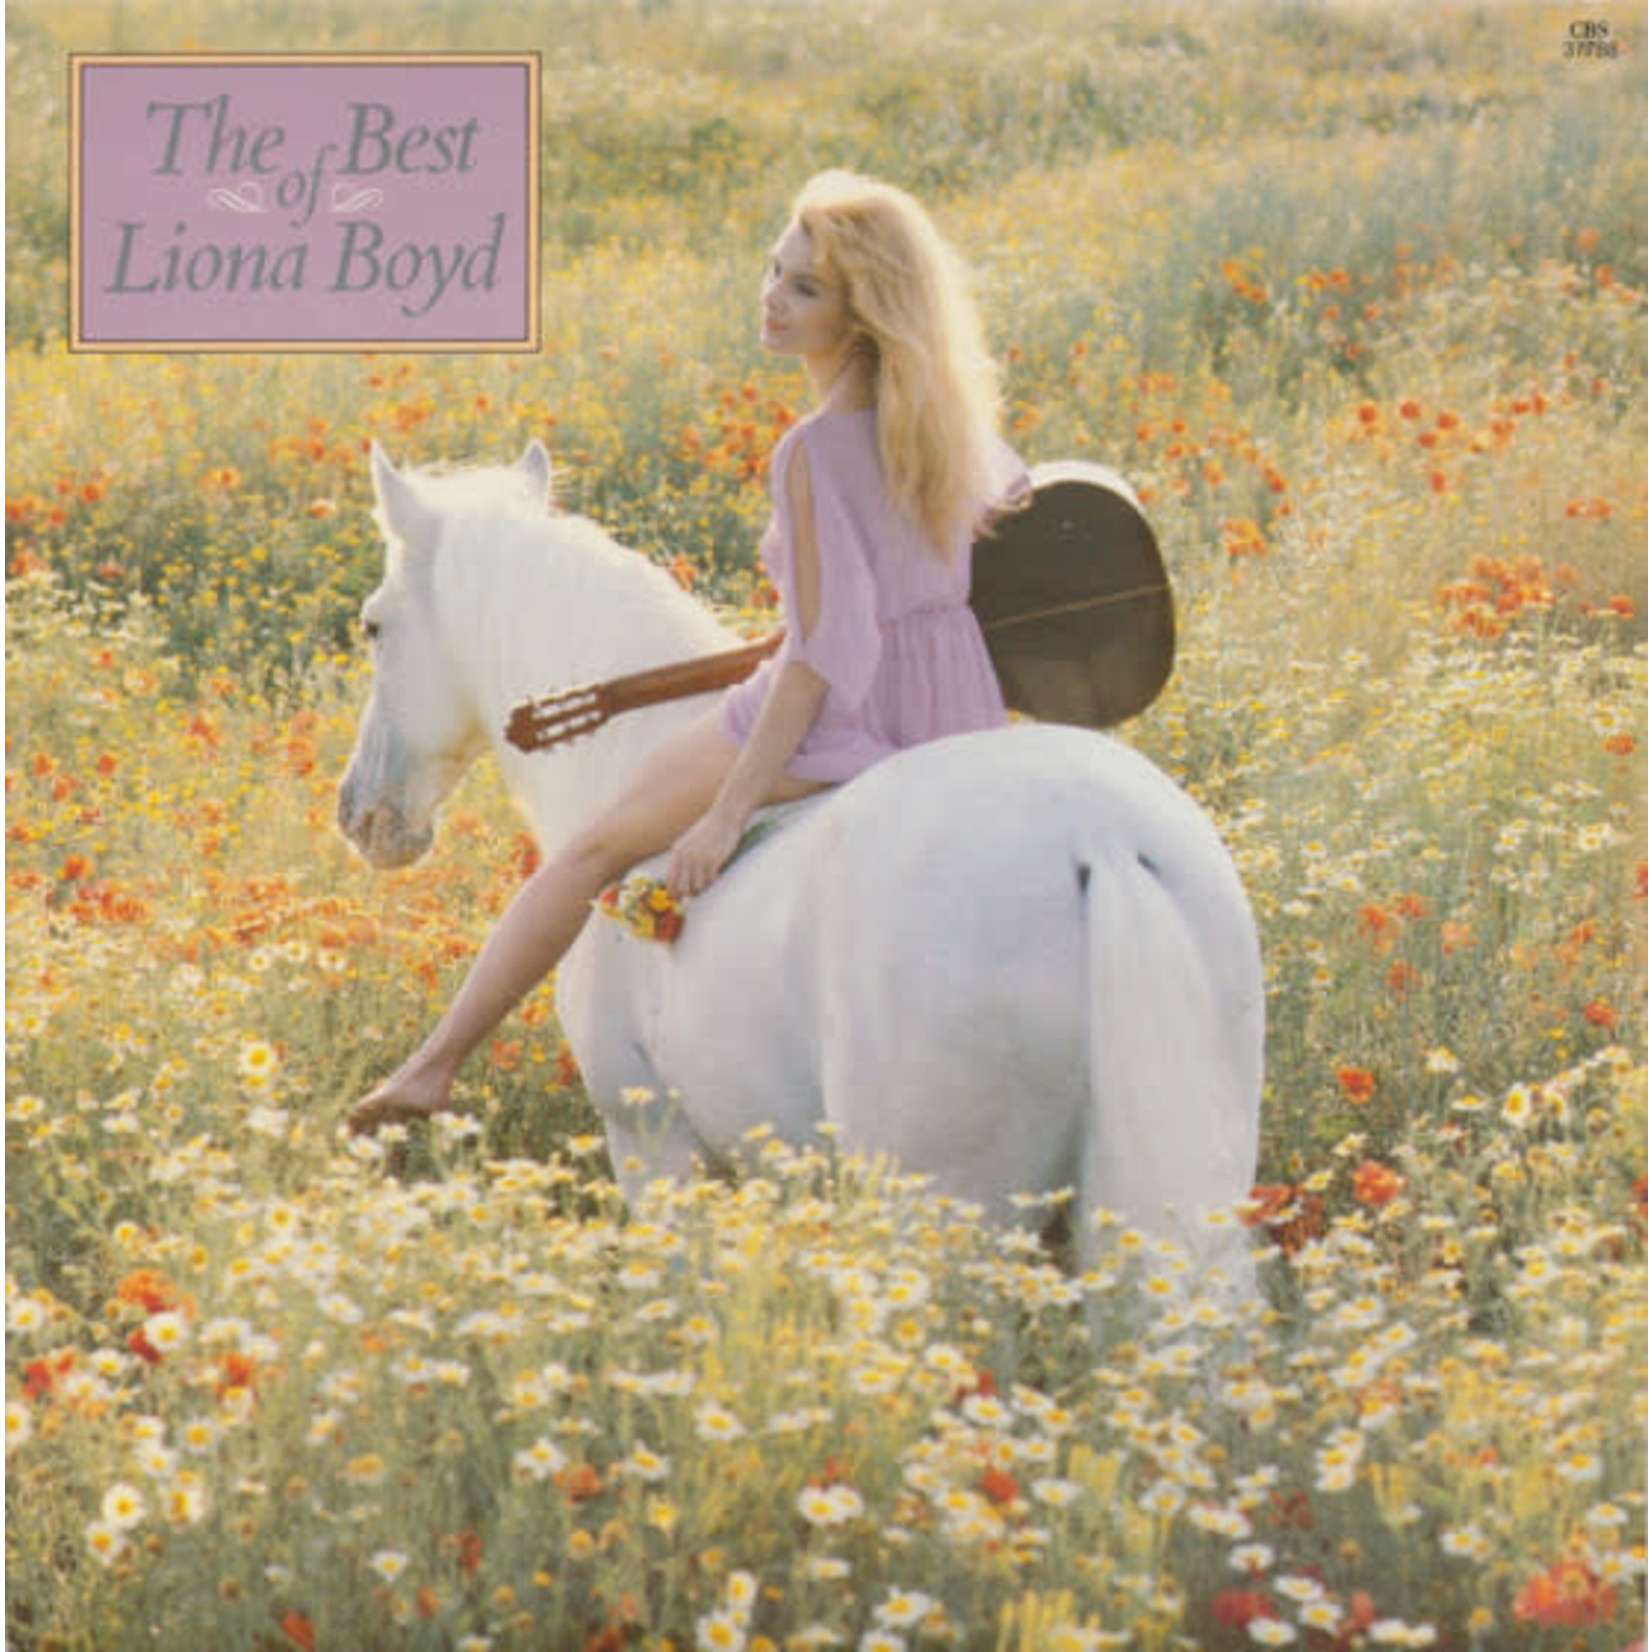 Liona Boyd Liona Boyd – The Best Of Liona Boyd (VG, 1982, LP, CBS – FM 37788, Canada)